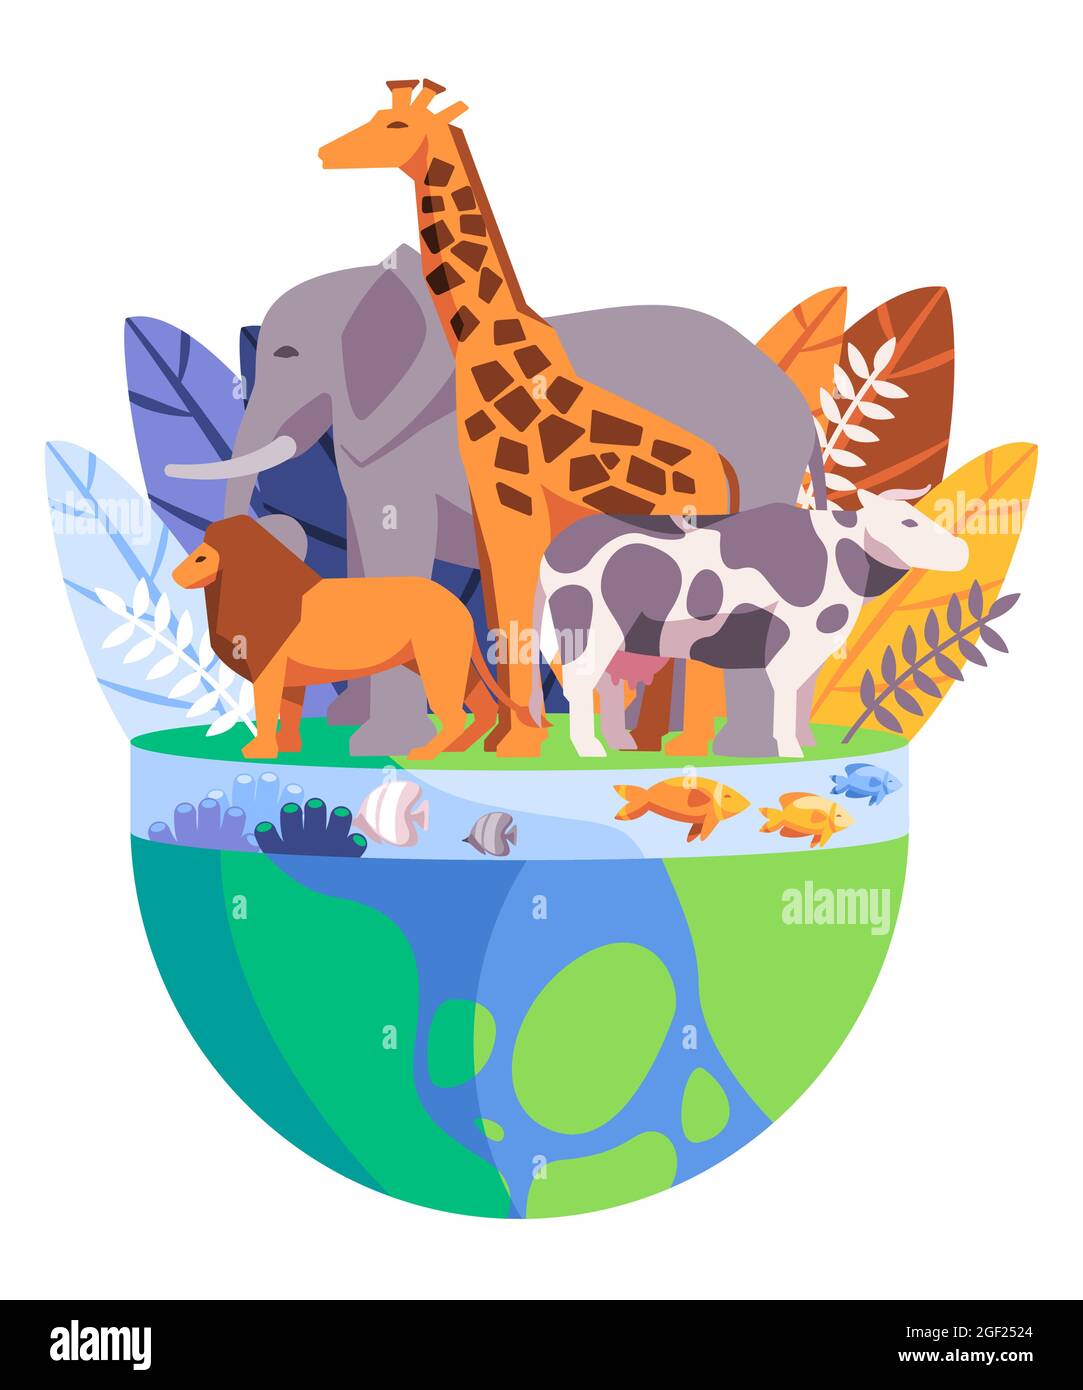 fond de dessin animé avec des poissons-lions girafes d'éléphant et des récifs de corail de couleur verte et bleue Illustration de Vecteur